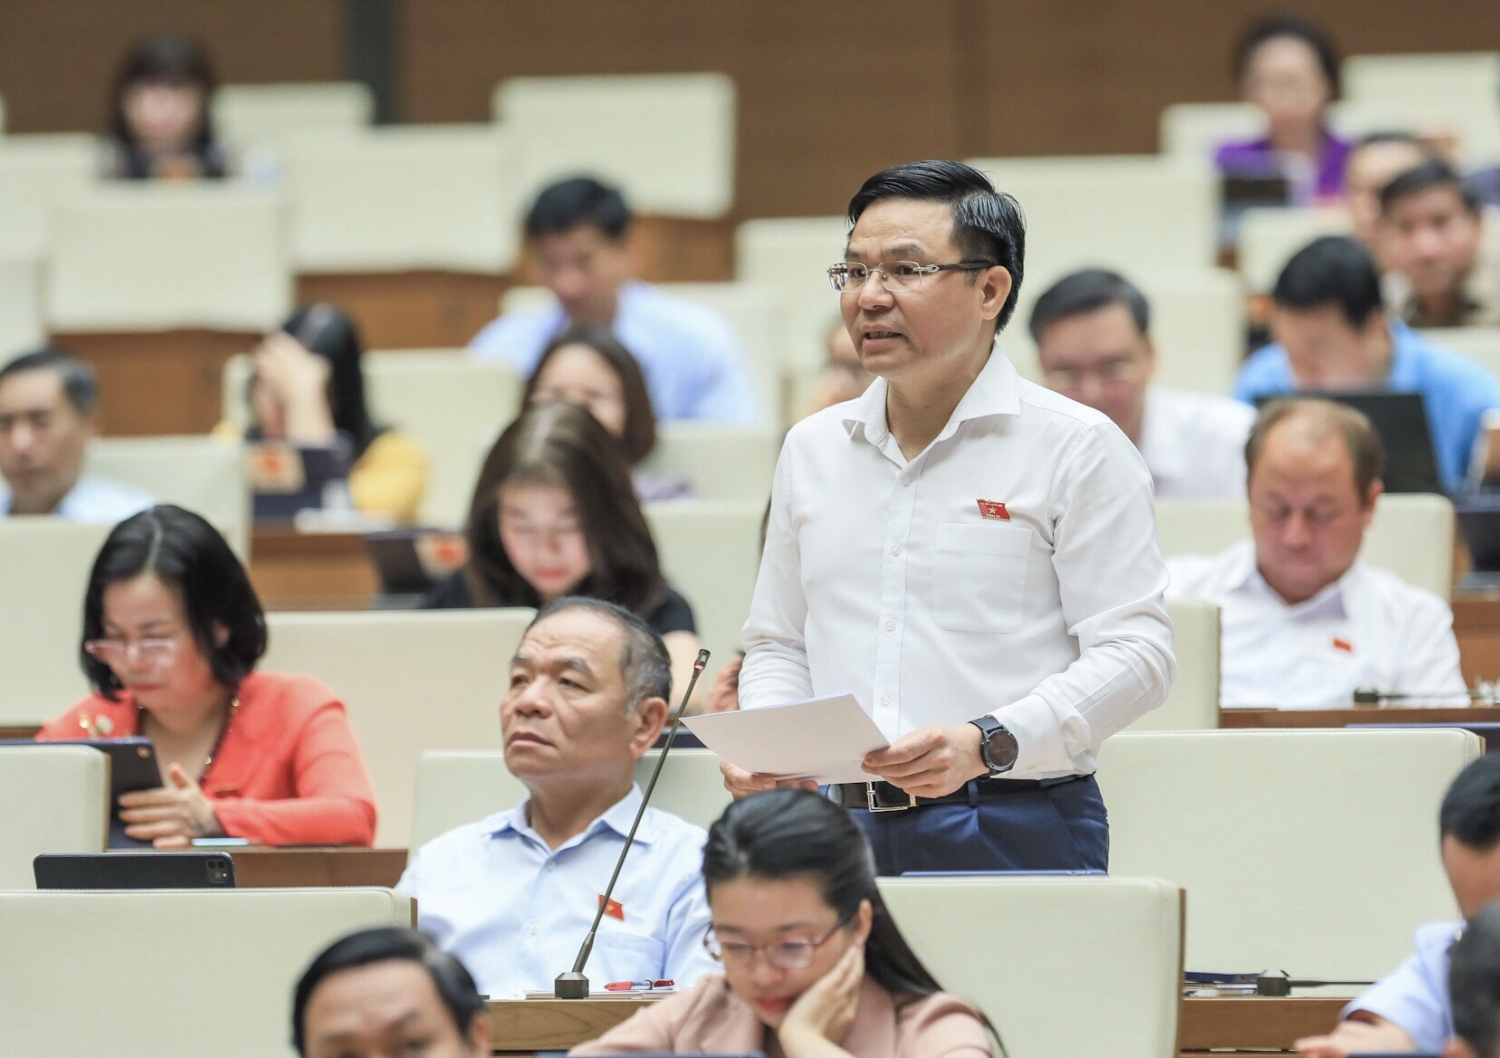 Toàn văn phát biểu của Tổng Giám đốc PVN Lê Mạnh Hùng về dự án Luật Dầu khí (sửa đổi) tại hội trường Quốc hội